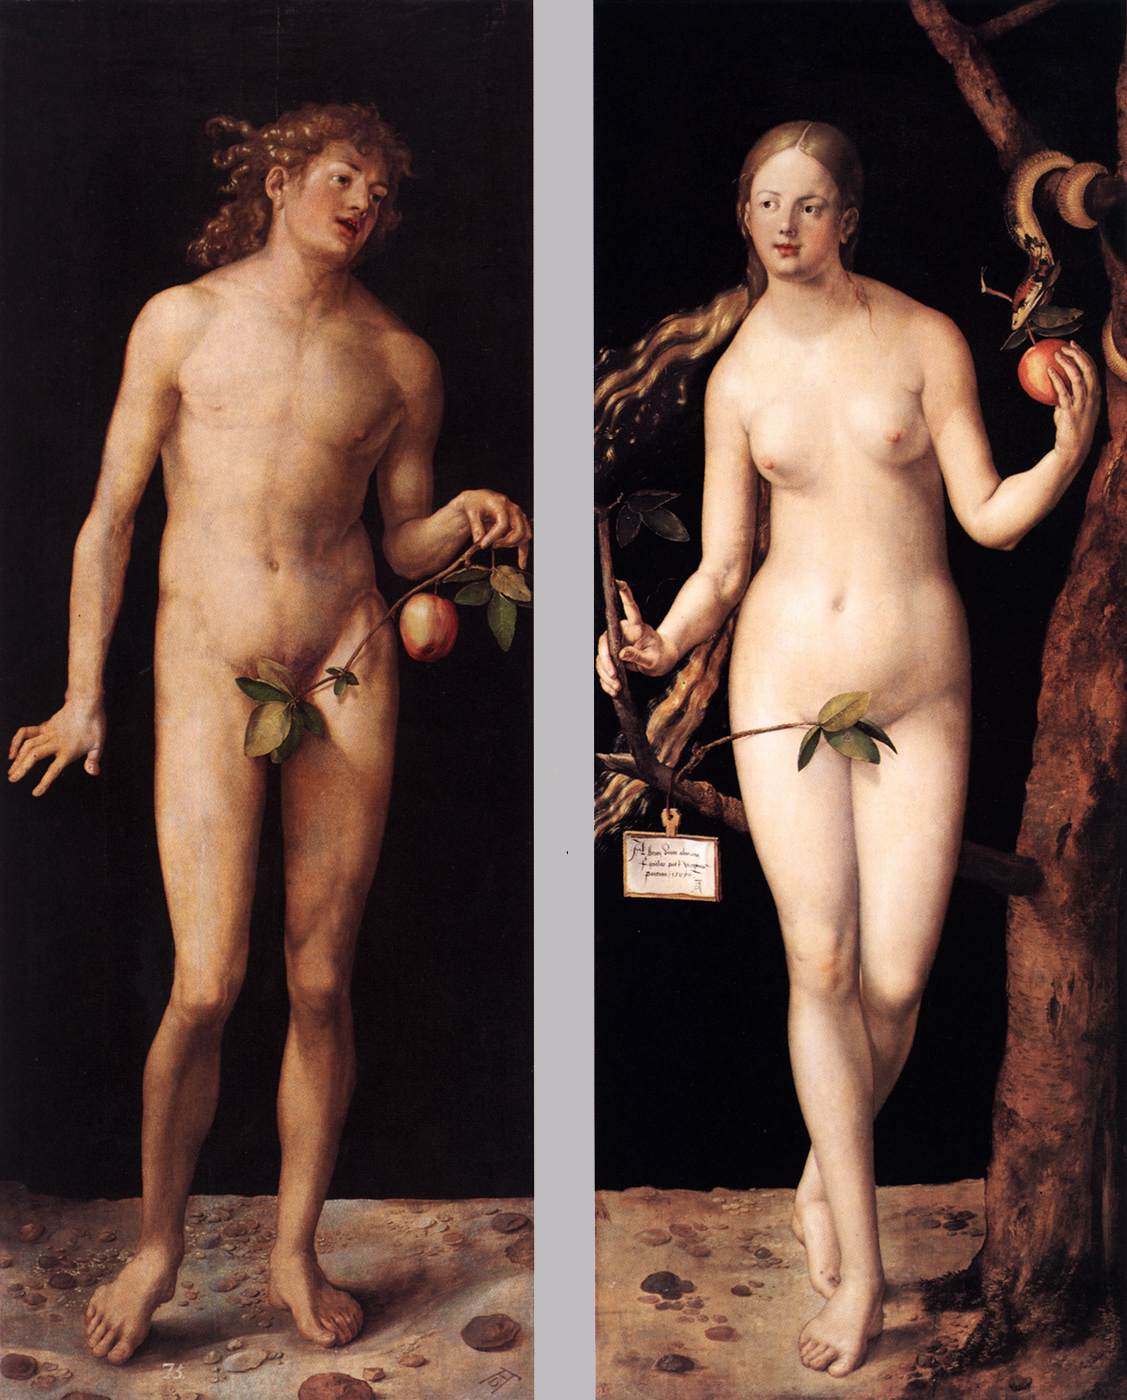 Adão E Eva